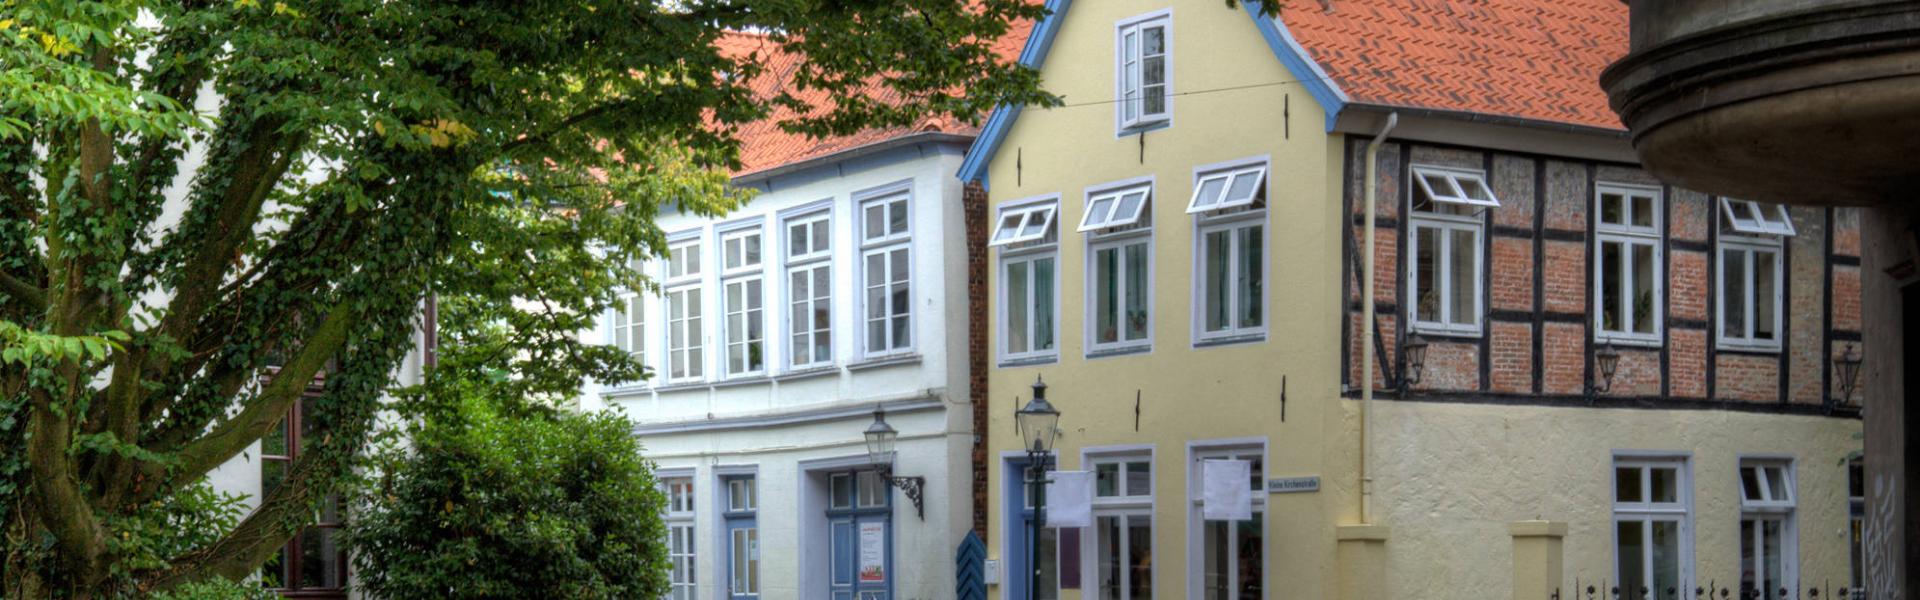 Ferienwohnungen und Ferienhäuser in Oldenburg - HomeToGo